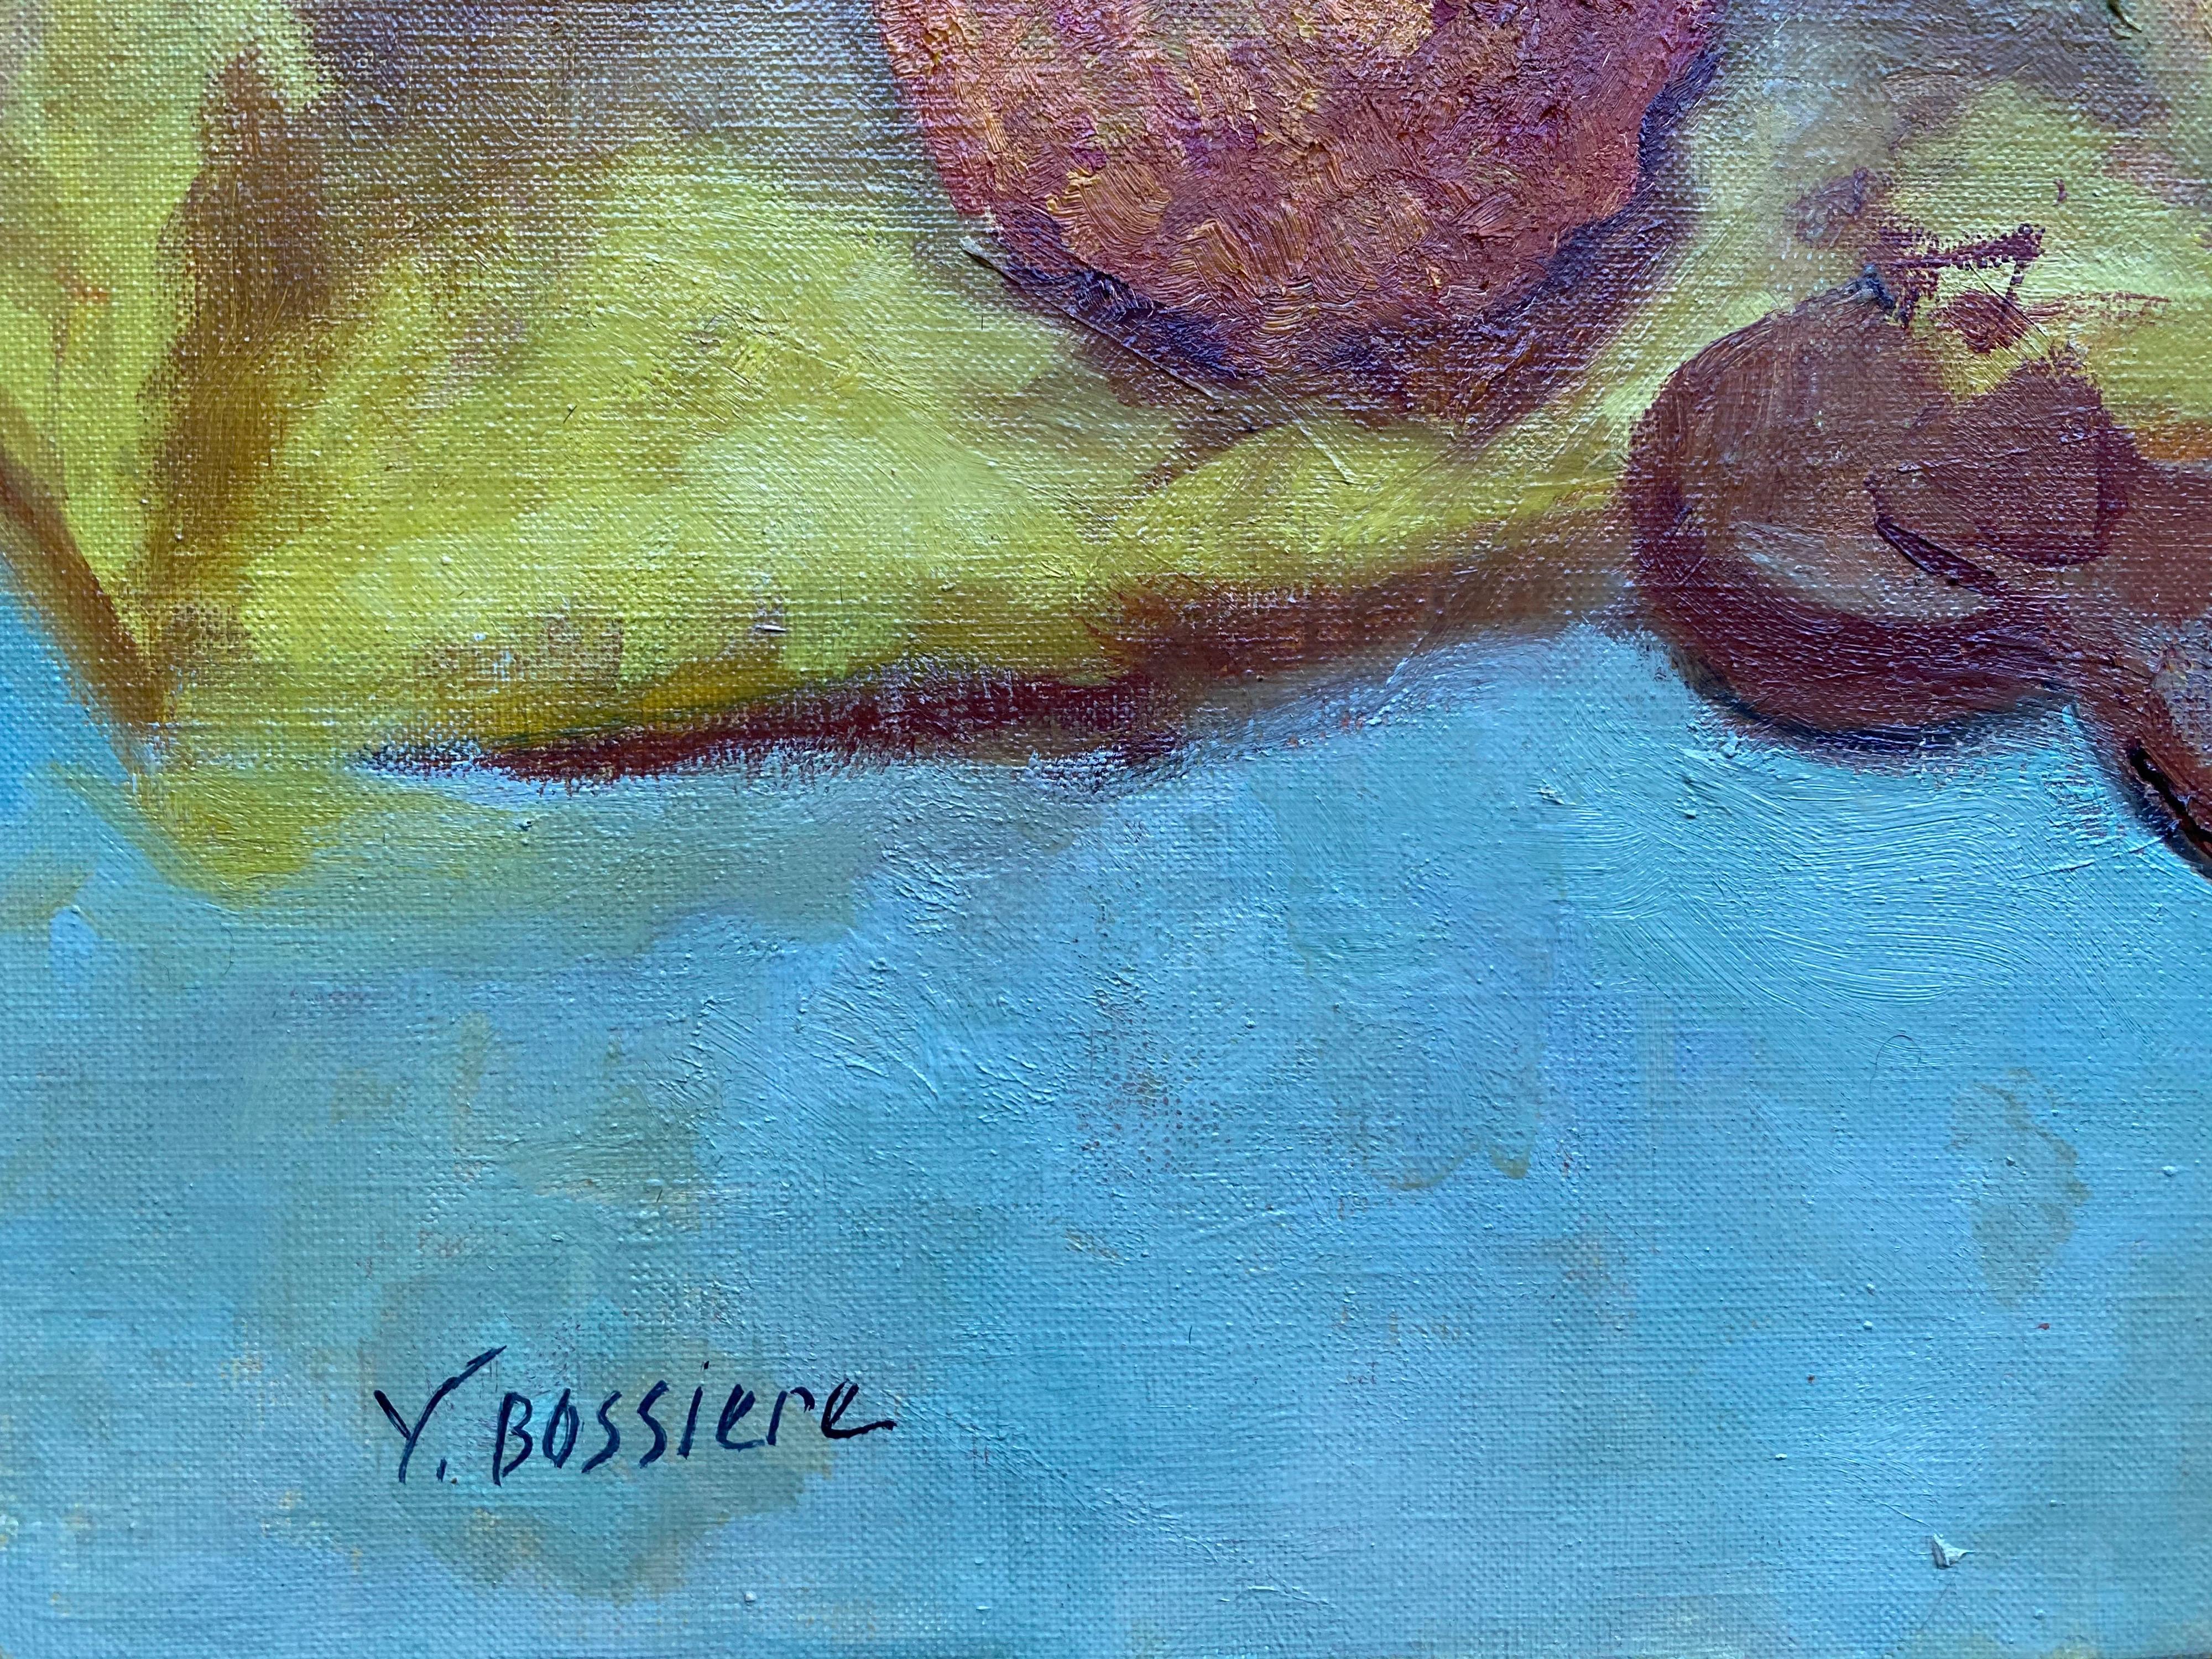 Artiste : Yvette Bossiere (française, née en 1926), signée dans le coin inférieur et au verso

Titre : Le violon

Support : peinture à l'huile sur toile, non encadrée

Taille : peinture : 25.5 x 36.5 pouces

Provenance : la succession de l'artiste,